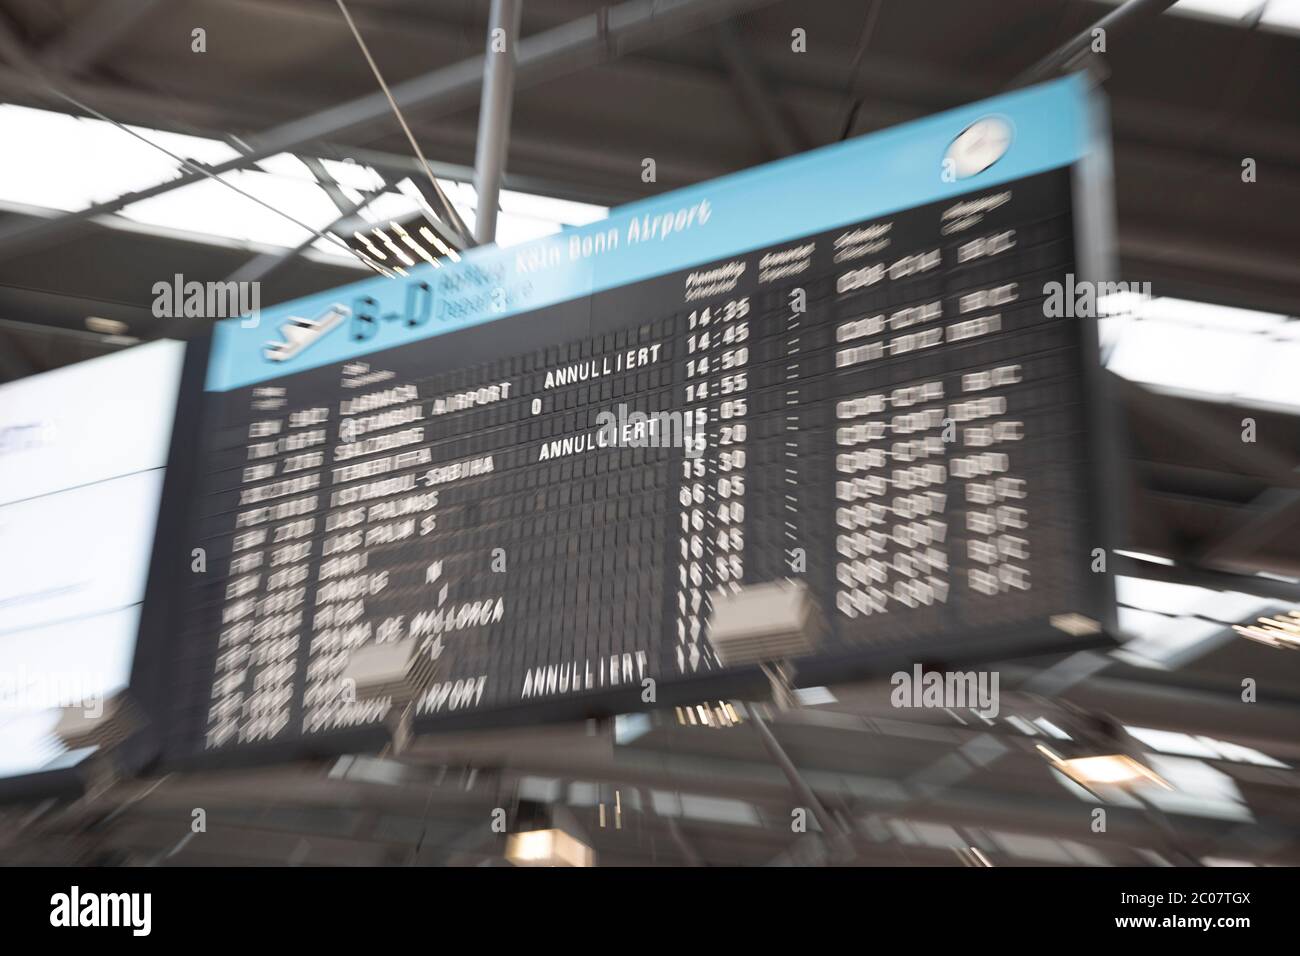 Hinweistafel am Flughafen Köln/Bonn zur Flugannulierung im Zusammenhang mit der weltweiten Ausbreitung des Coronavirus. Köln, 14.03.2020 Stock Photo